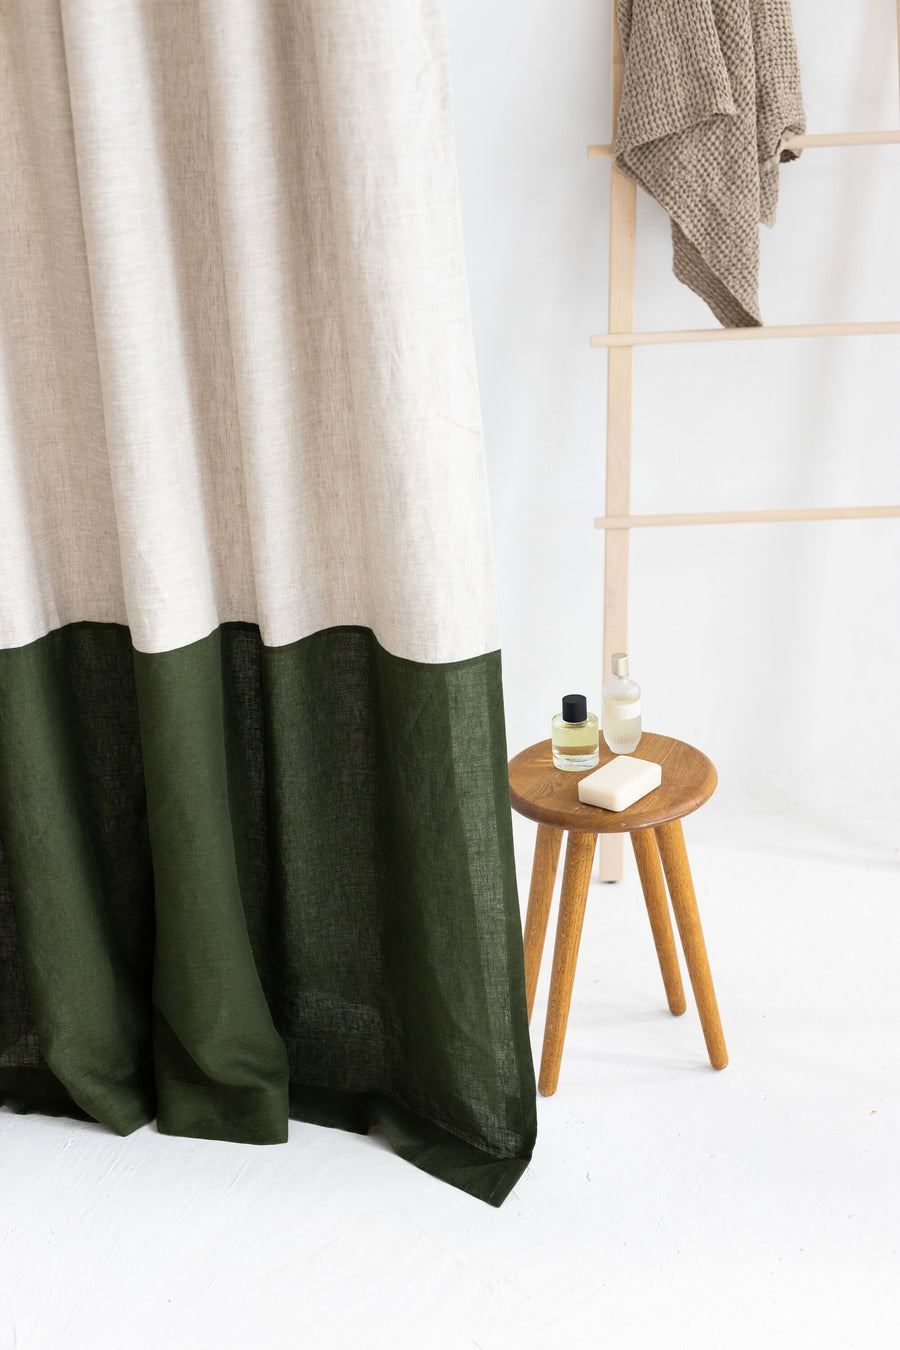 Waterproof Natural Light and Dark green Linen Shower Curtain